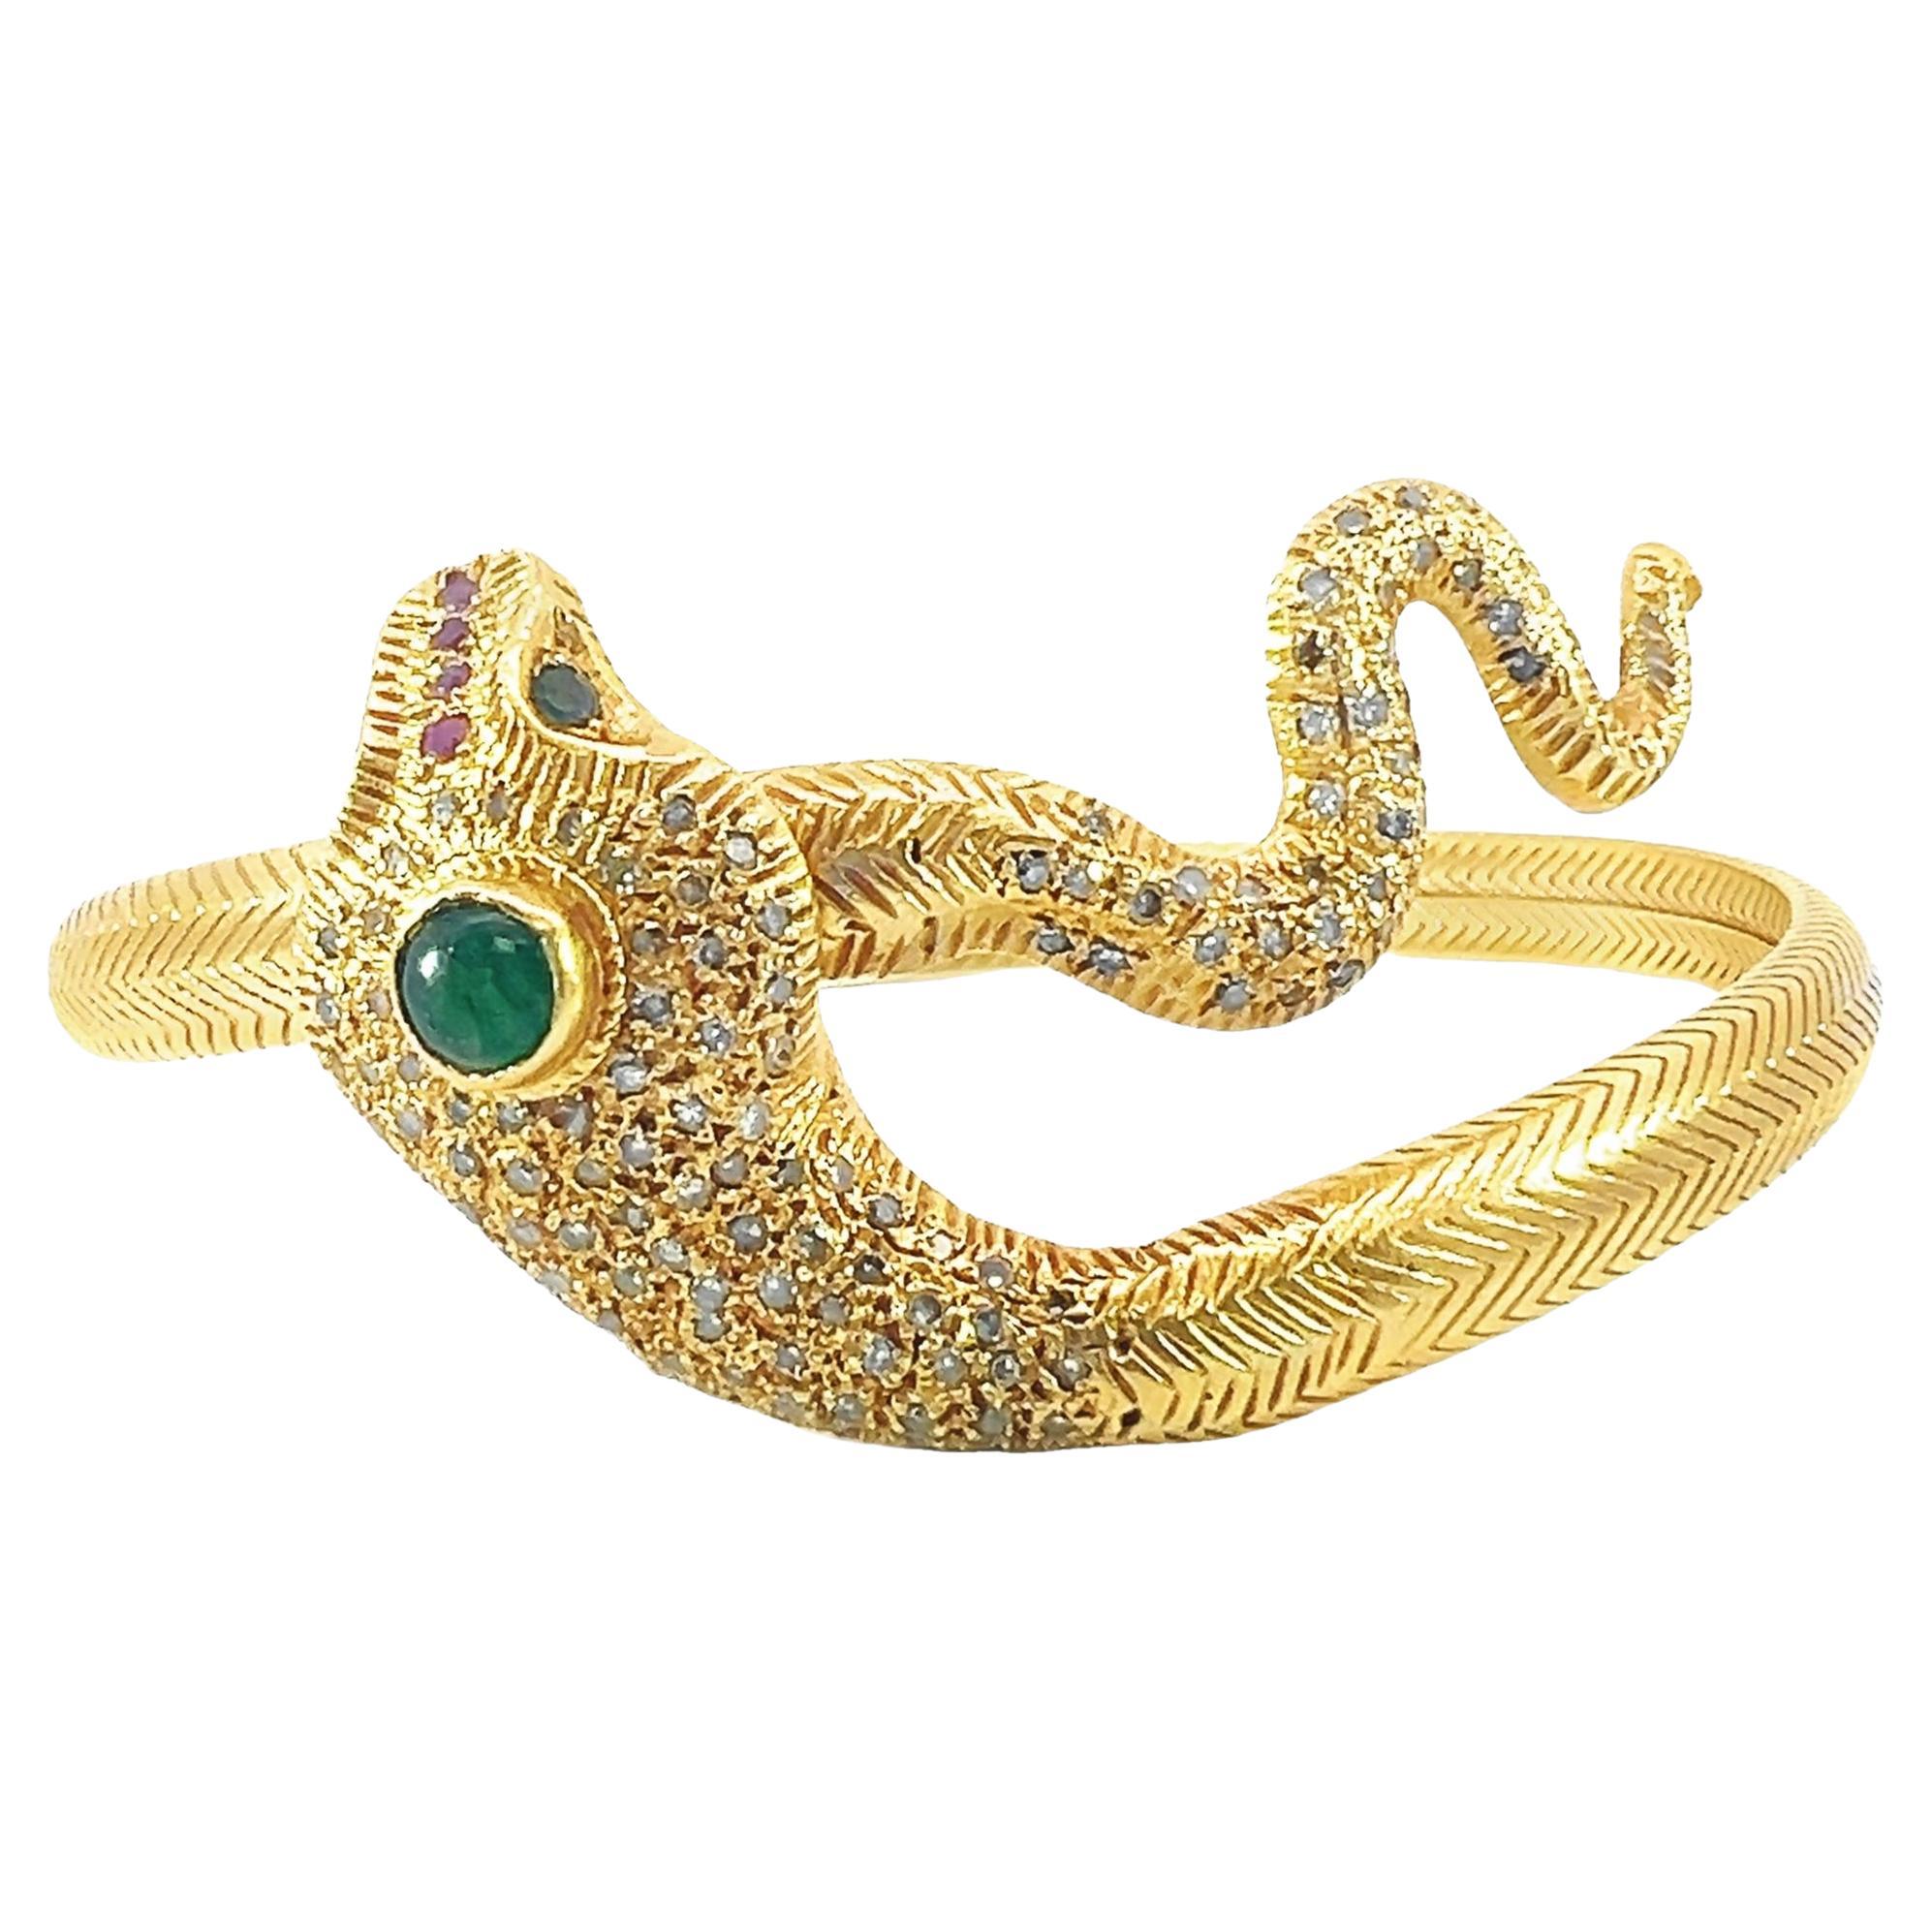 Schöner Schlangenarmreif aus massivem Gold mit Diamanten, Smaragd und Rubin